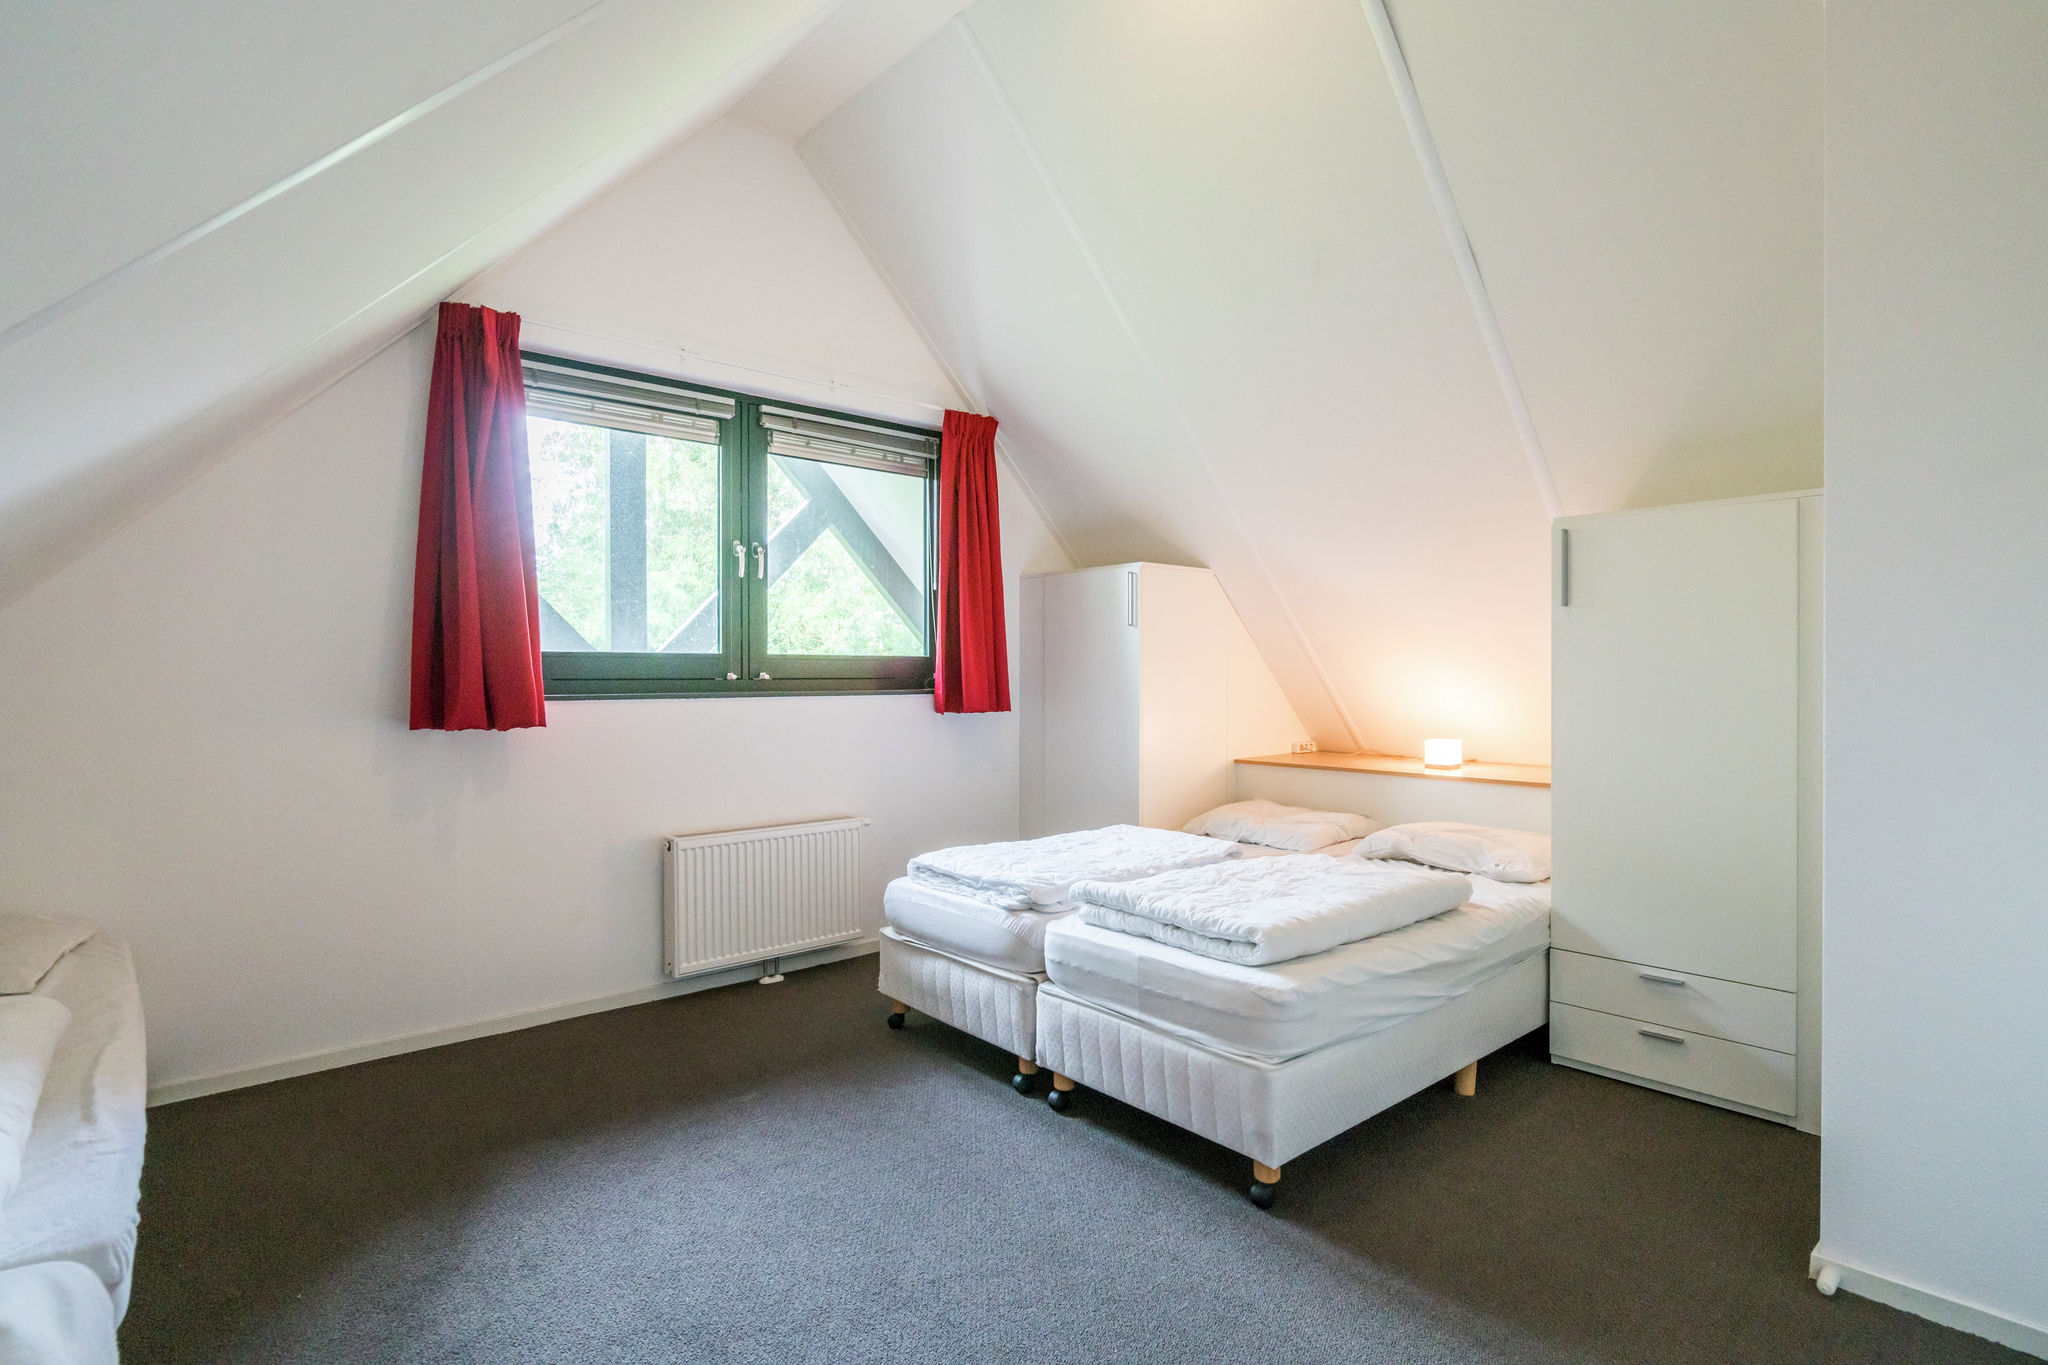 Komfortabel eingerichtetes Ferienhaus am Slotermeer